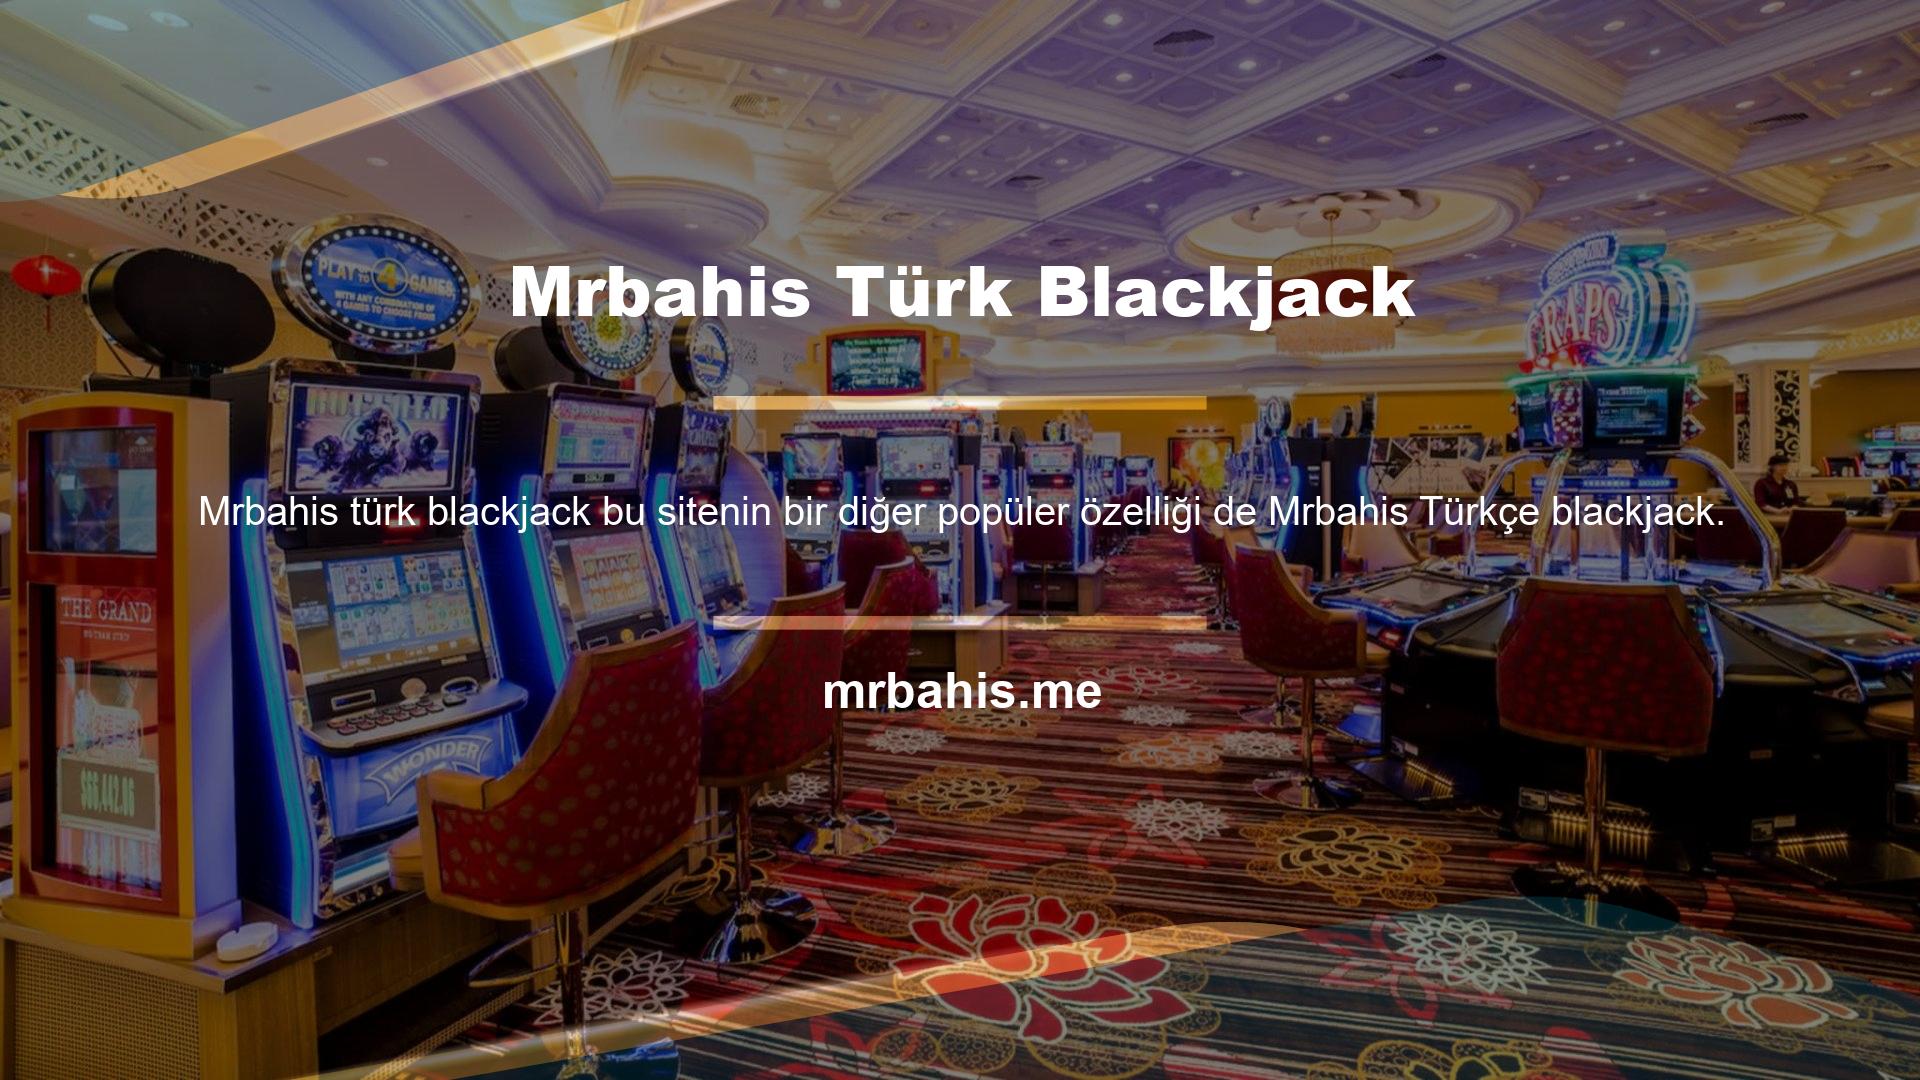 Türkçe blackjack hizmetleri, çoğu yazılım firması tarafından desteklenen canlı bahis siteleri tarafından sunulmaktadır